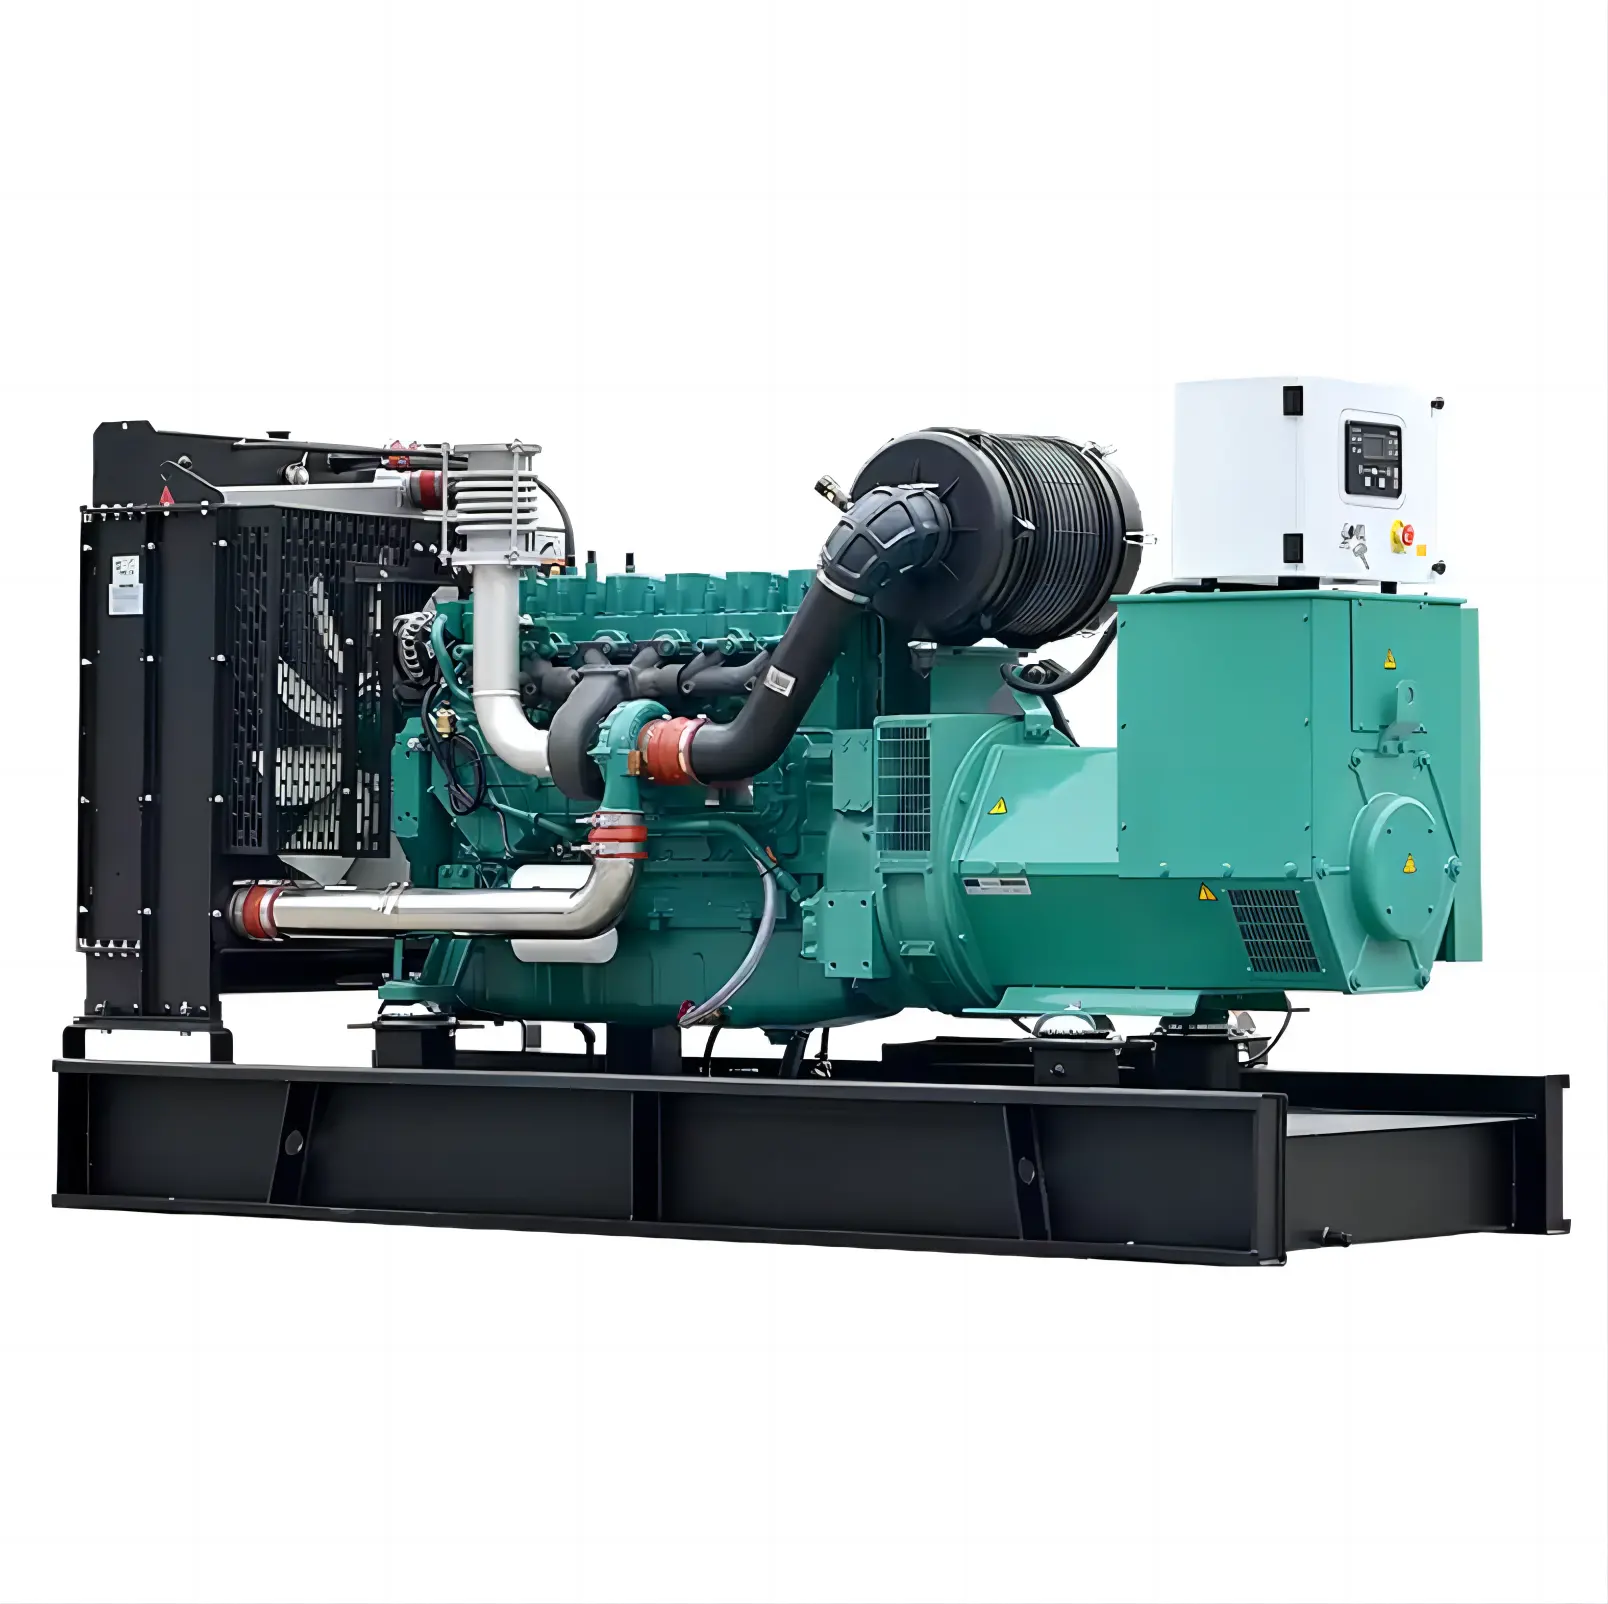 Xách tay máy phát điện 250kva mô hình diesel-xăng Máy phát điện màu xanh lá cây tự động bắt đầu Đánh giá điện ISO